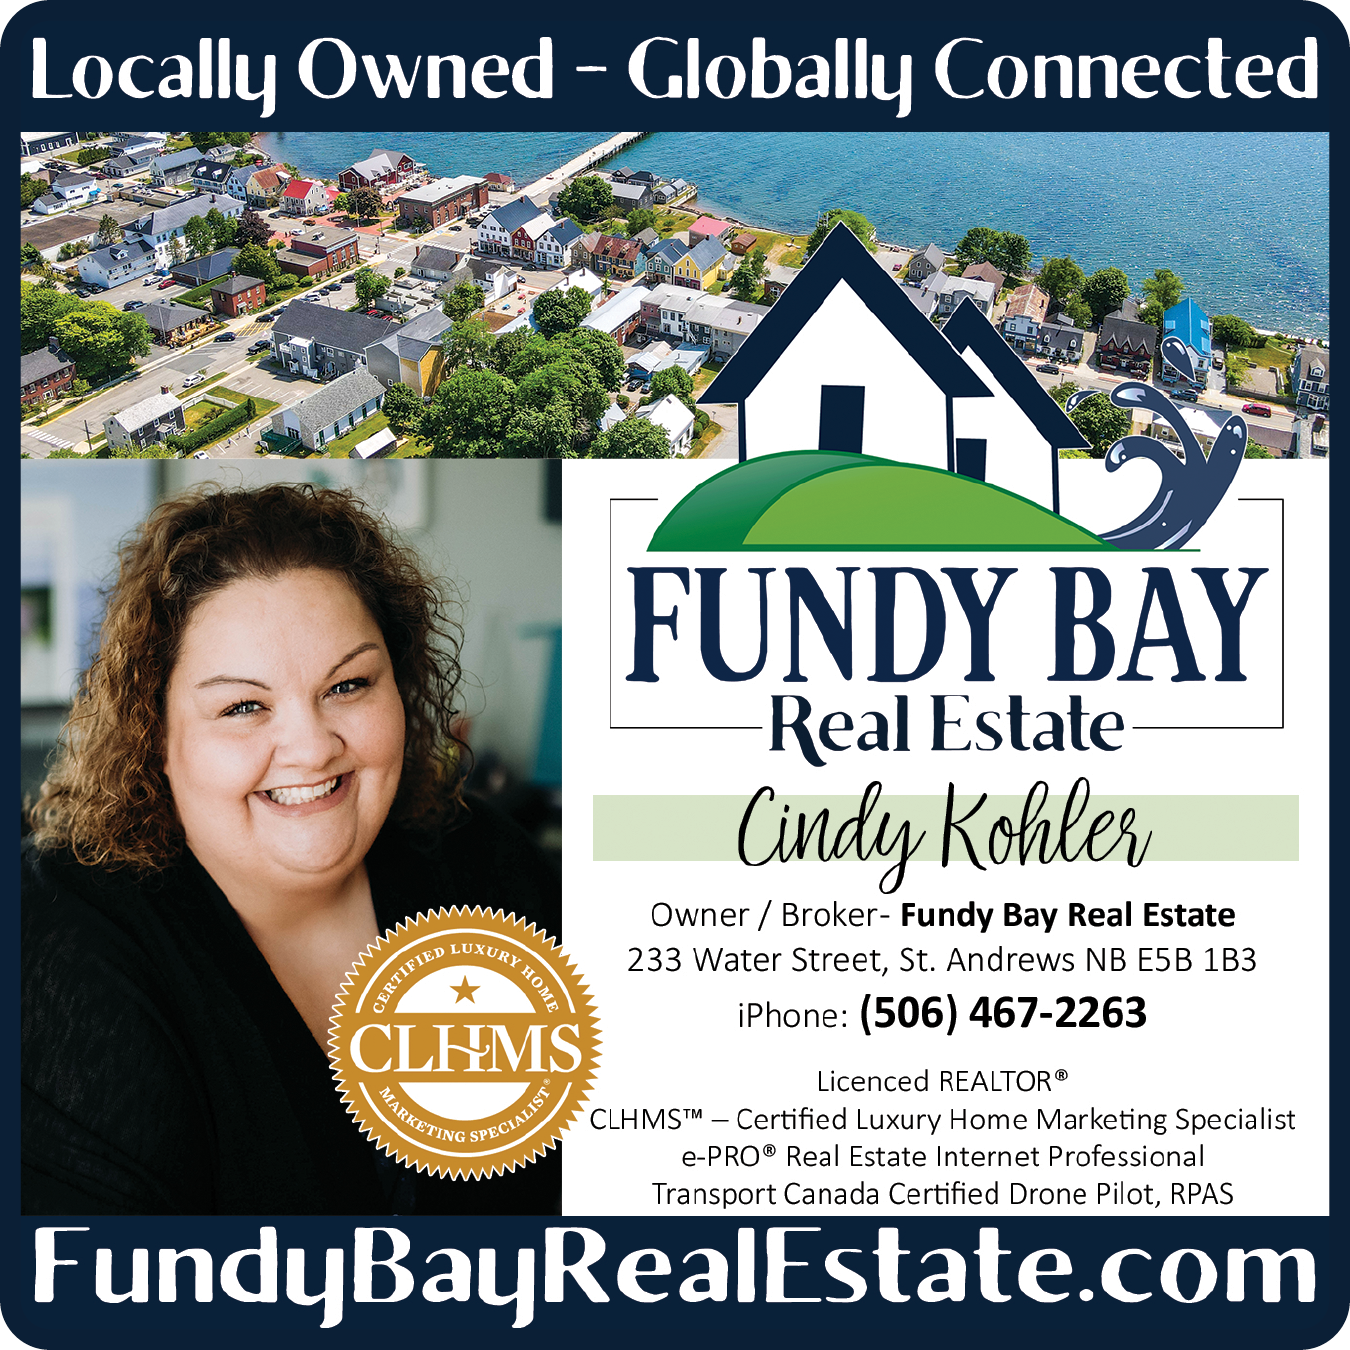 Cindy Kohler - Fundy Bay Real Estate